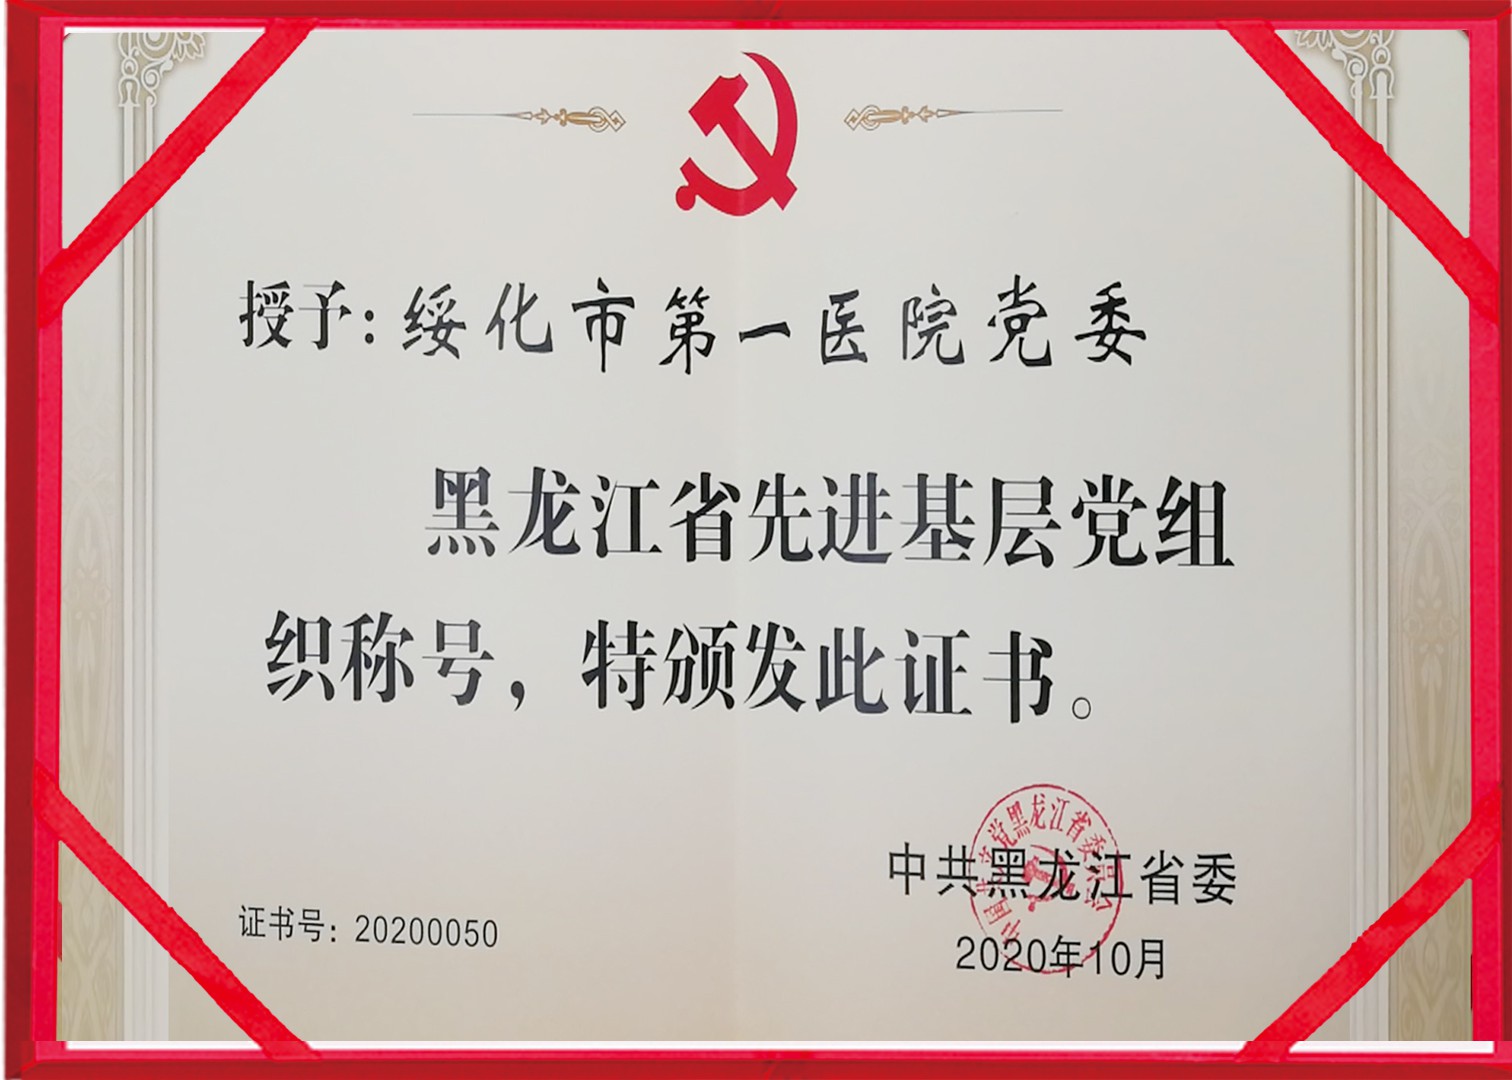 2020年10月绥化市第一医院荣获黑龙江省先进基层党组织称号副本